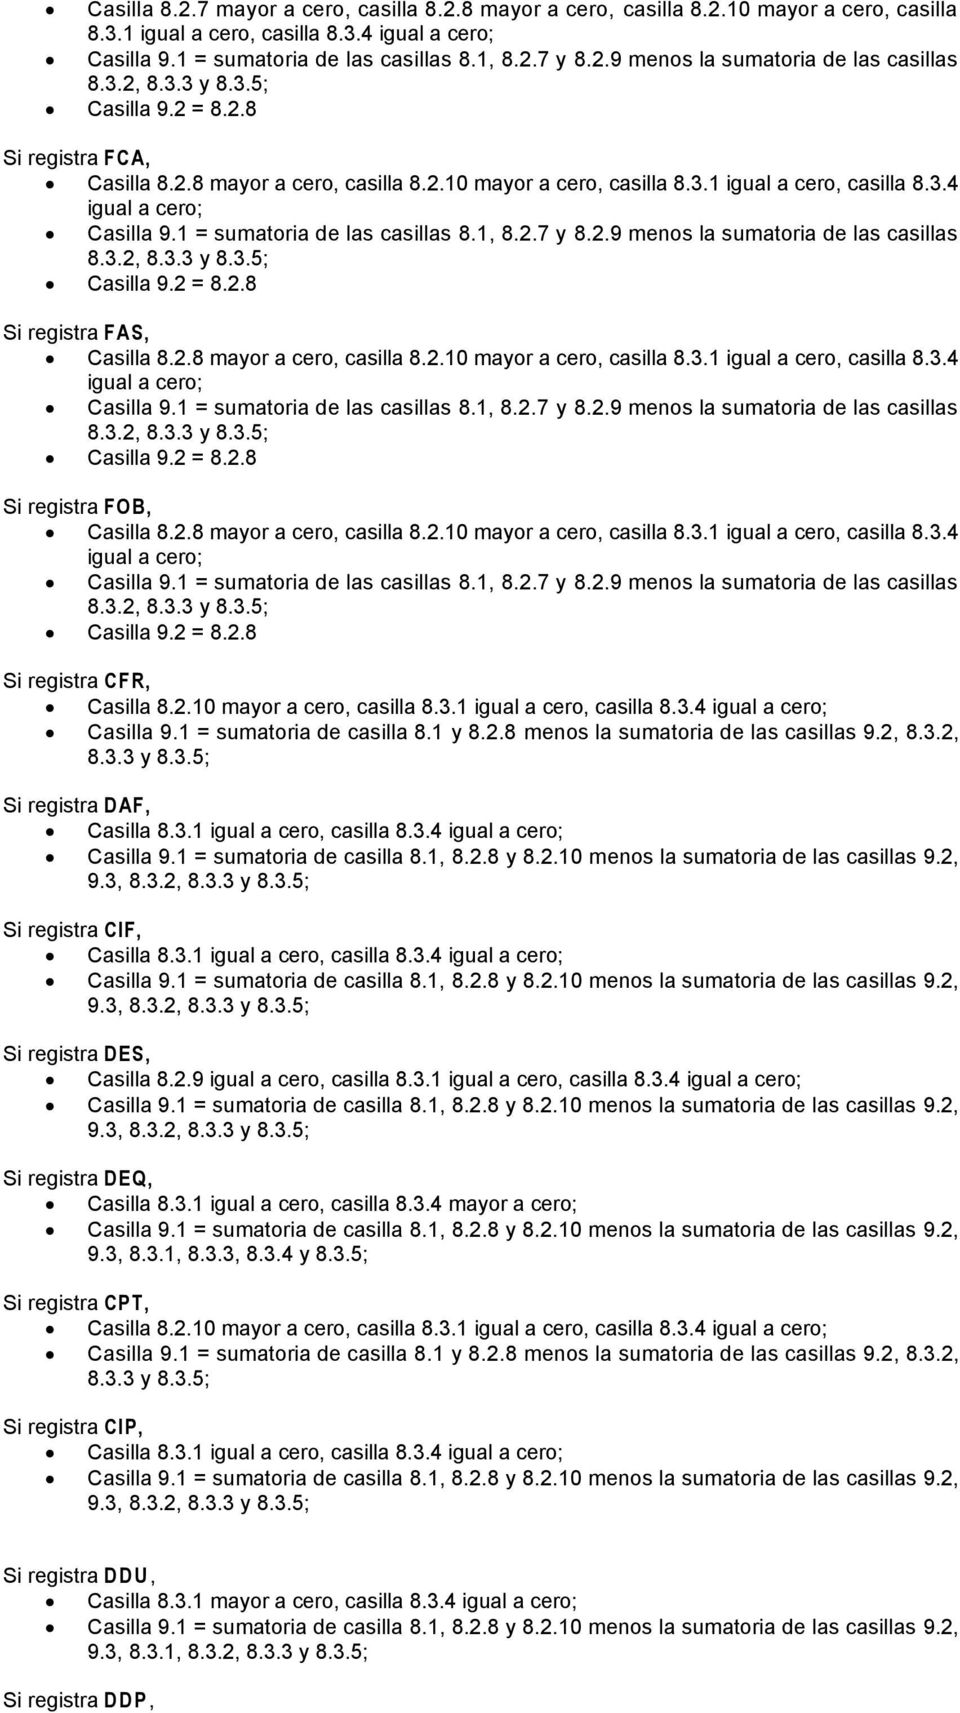 2.10 mayor a cero, casilla 8.3.1 igual a cero, casilla 8.3.4 9.1 = sumatoria de casilla 8.1 y 8.2.8 menos la sumatoria de las casillas 9.2, 8.3.2, 8.3.3 y 8.3.5; Si registra DAF, 8.3.1 igual a cero, casilla 8.3.4 Si registra CIF, 8.